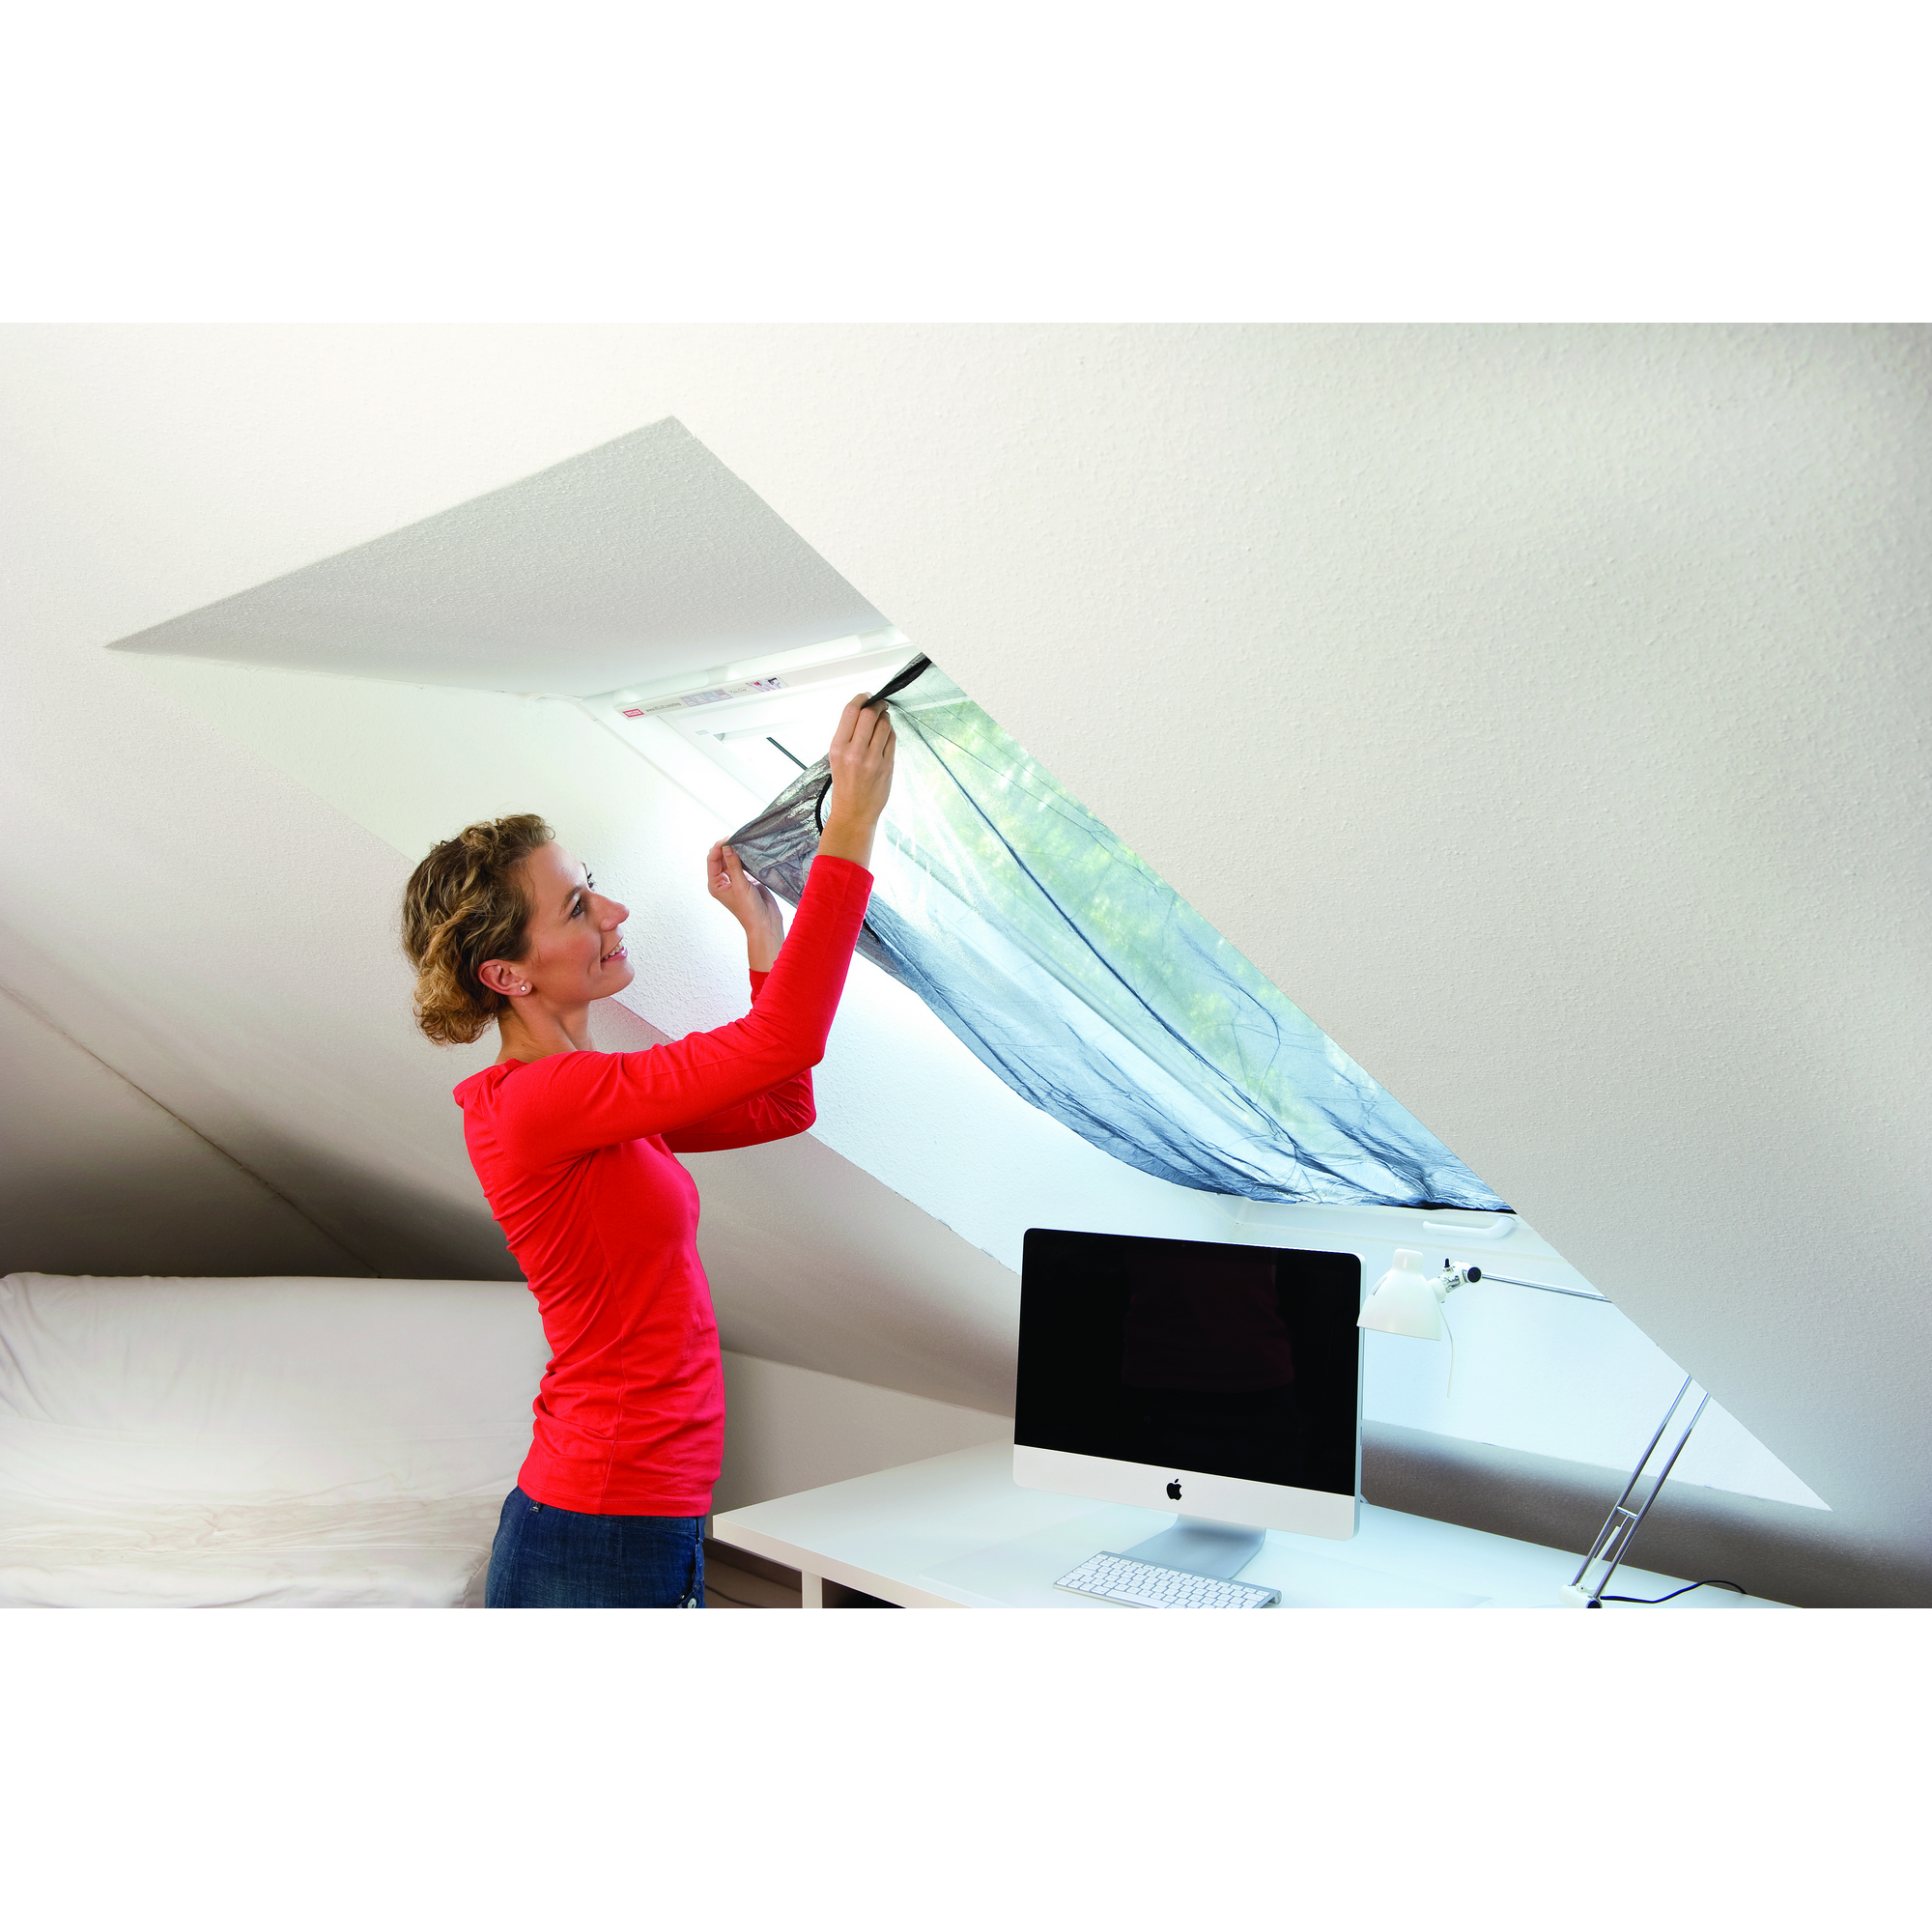 Fliegengitter für Dachfenster 'Sun Protect' 120 x 140 cm + product picture